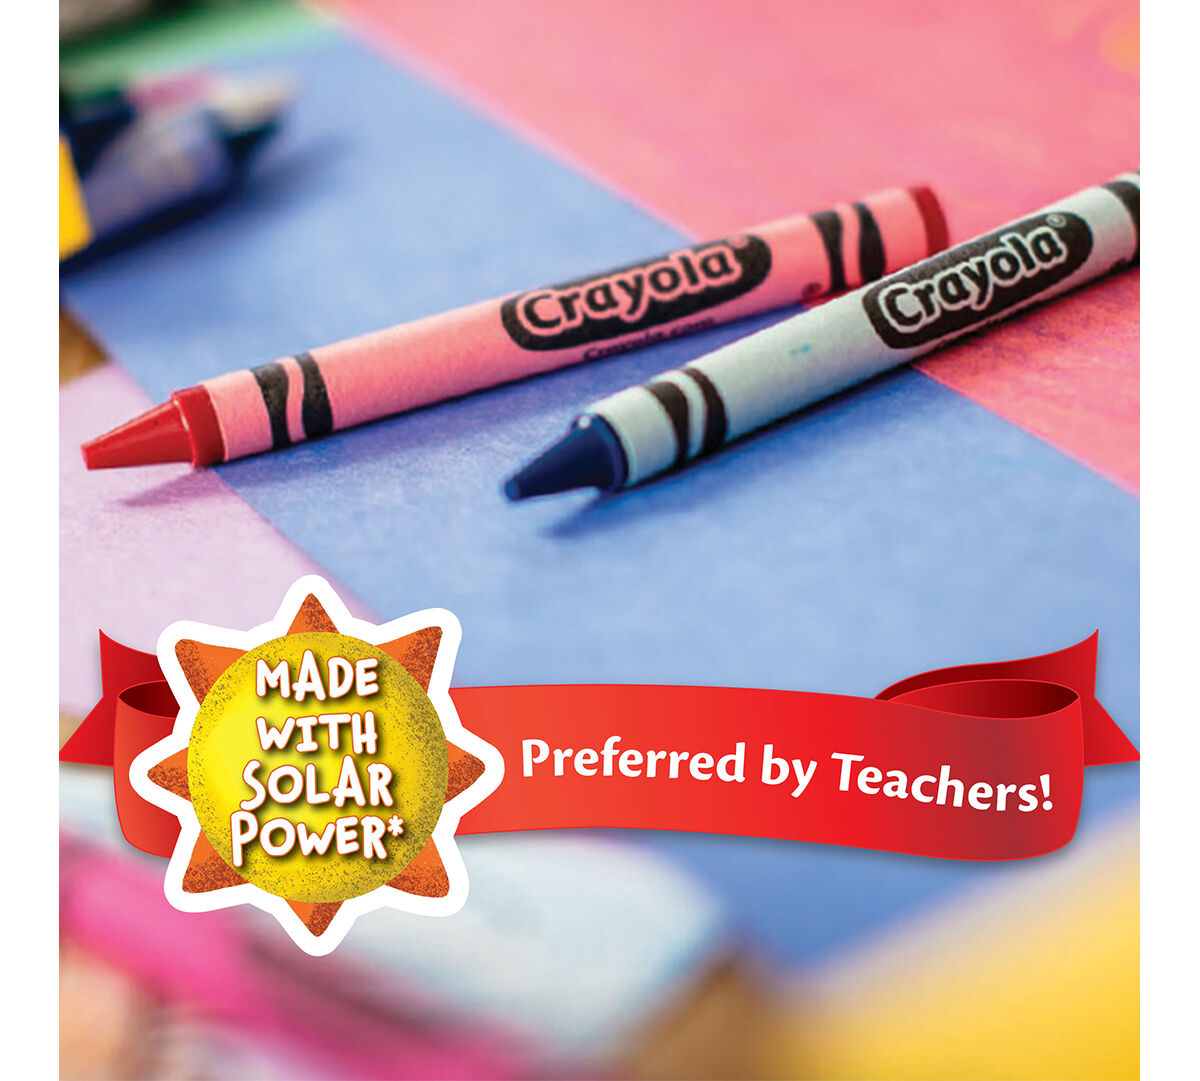 24 Crayola Crayons, School Supplies, Crayola.com